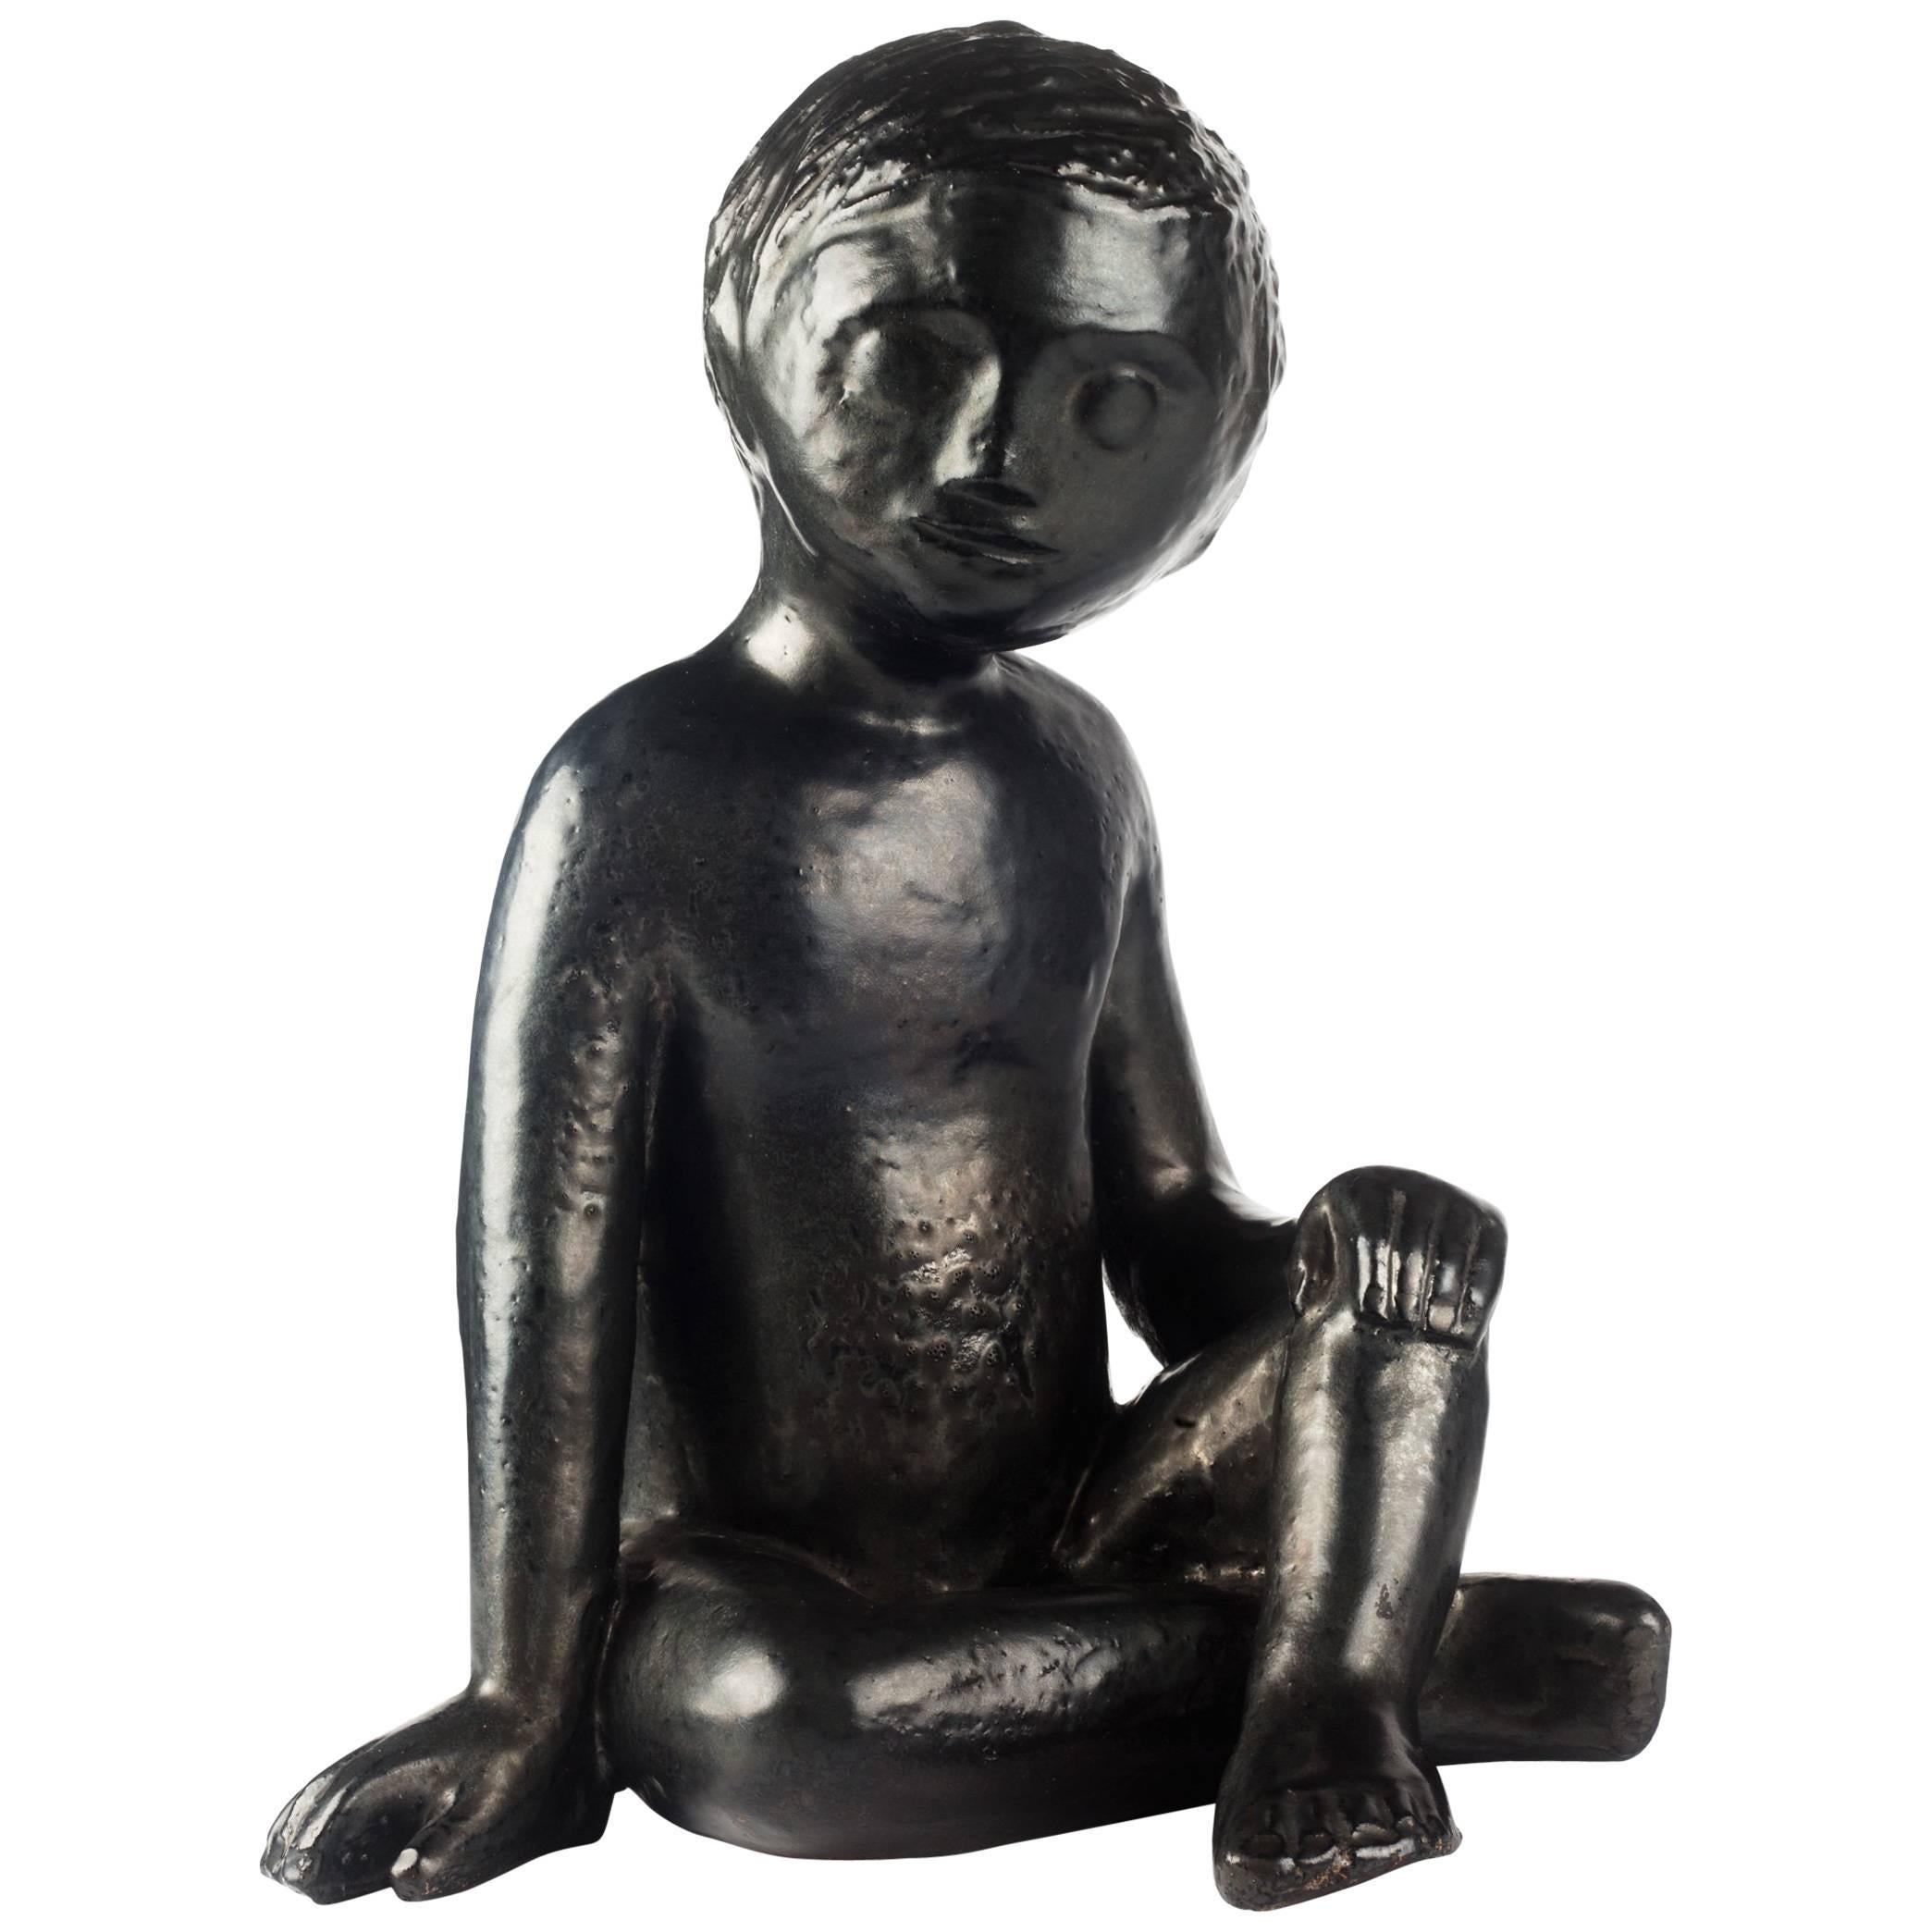 Child Ceramic Sculpture by Perignem Amphora, Black, Belgium, 1970s